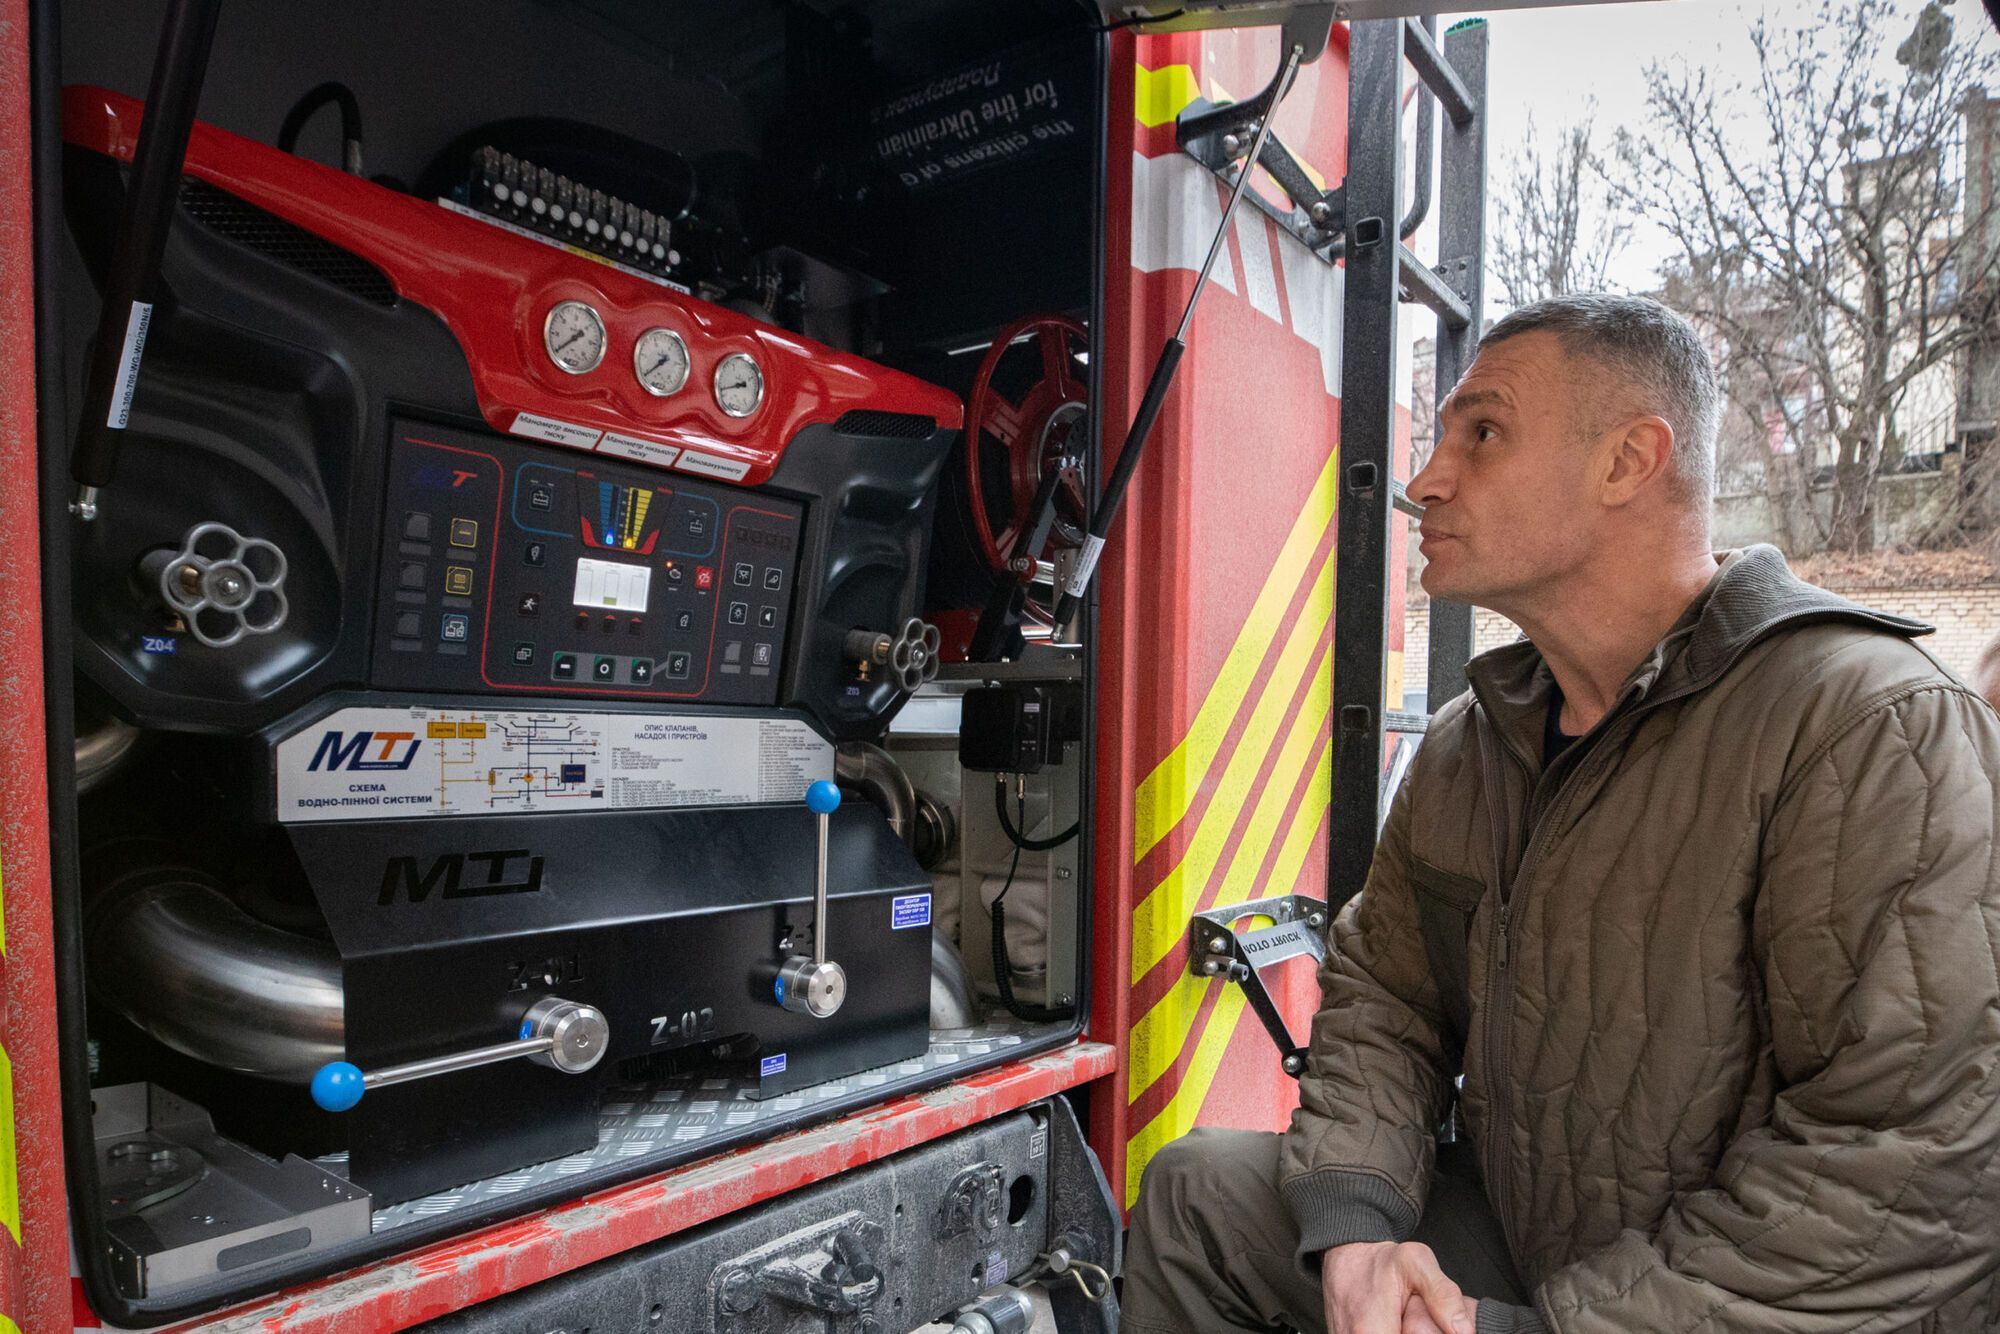 Иностранные партнеры передали Киеву еще один сверхсовременный пожарный автомобиль, – Кличко